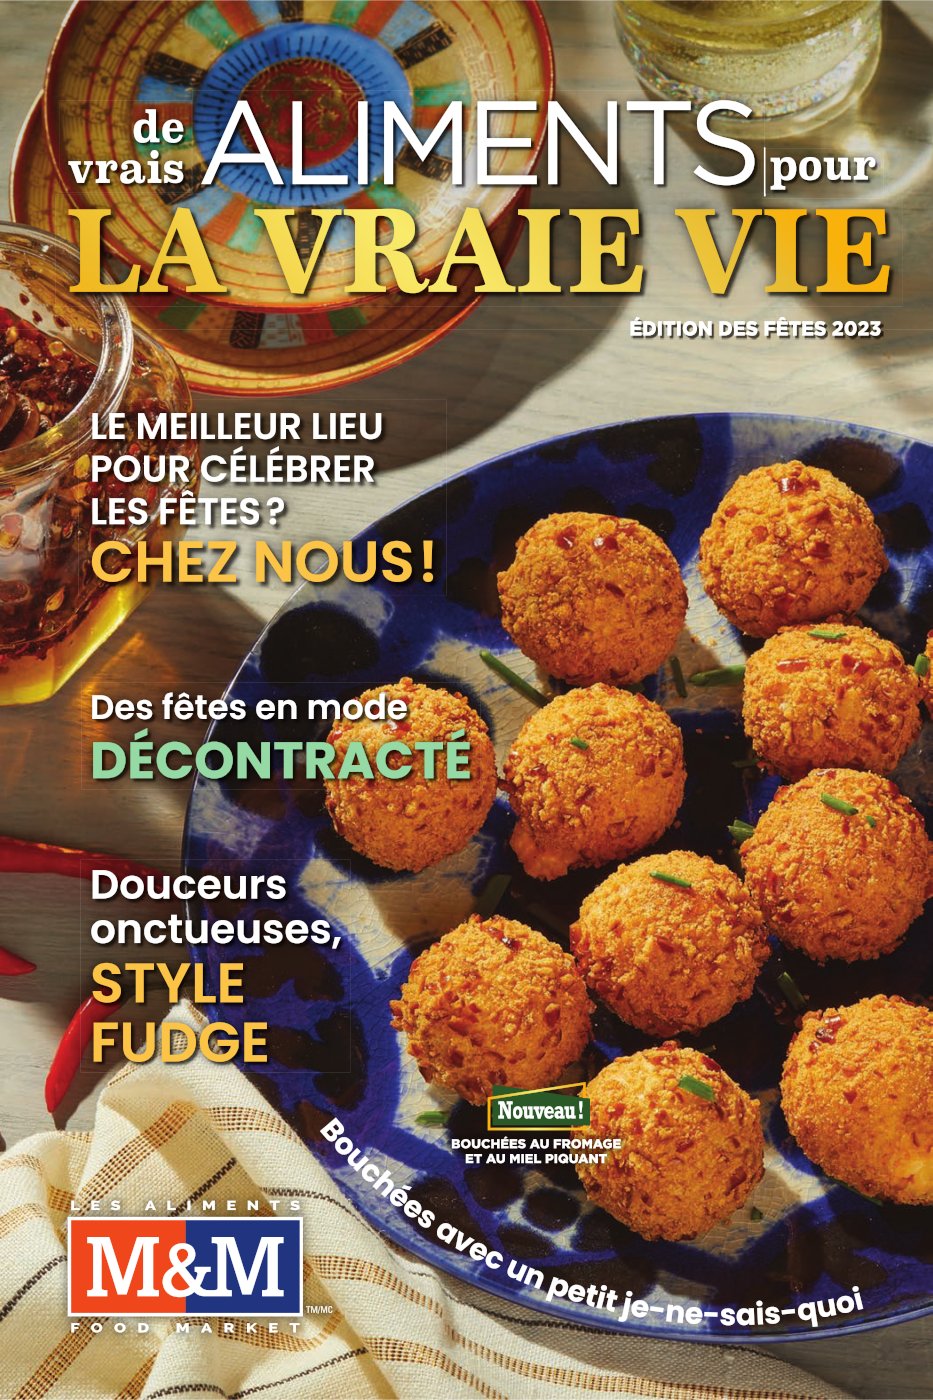 Circulaire Les Aliments M&M - La Vraie Vie - Page 1